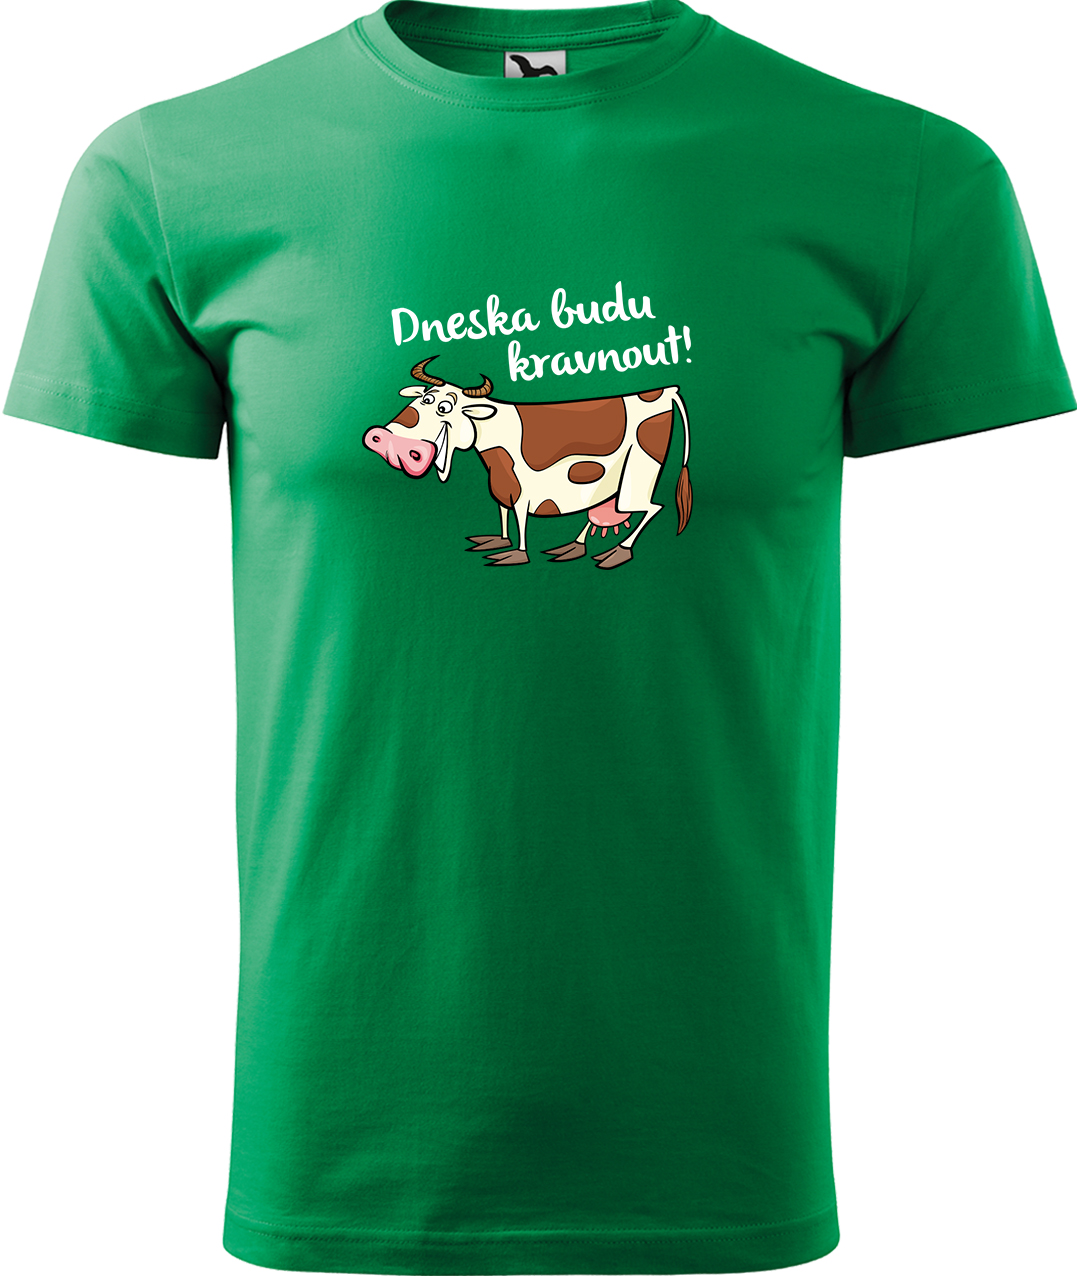 Pánské tričko s krávou - Dneska budu kravnout! Velikost: XL, Barva: Středně zelená (16), Střih: pánský